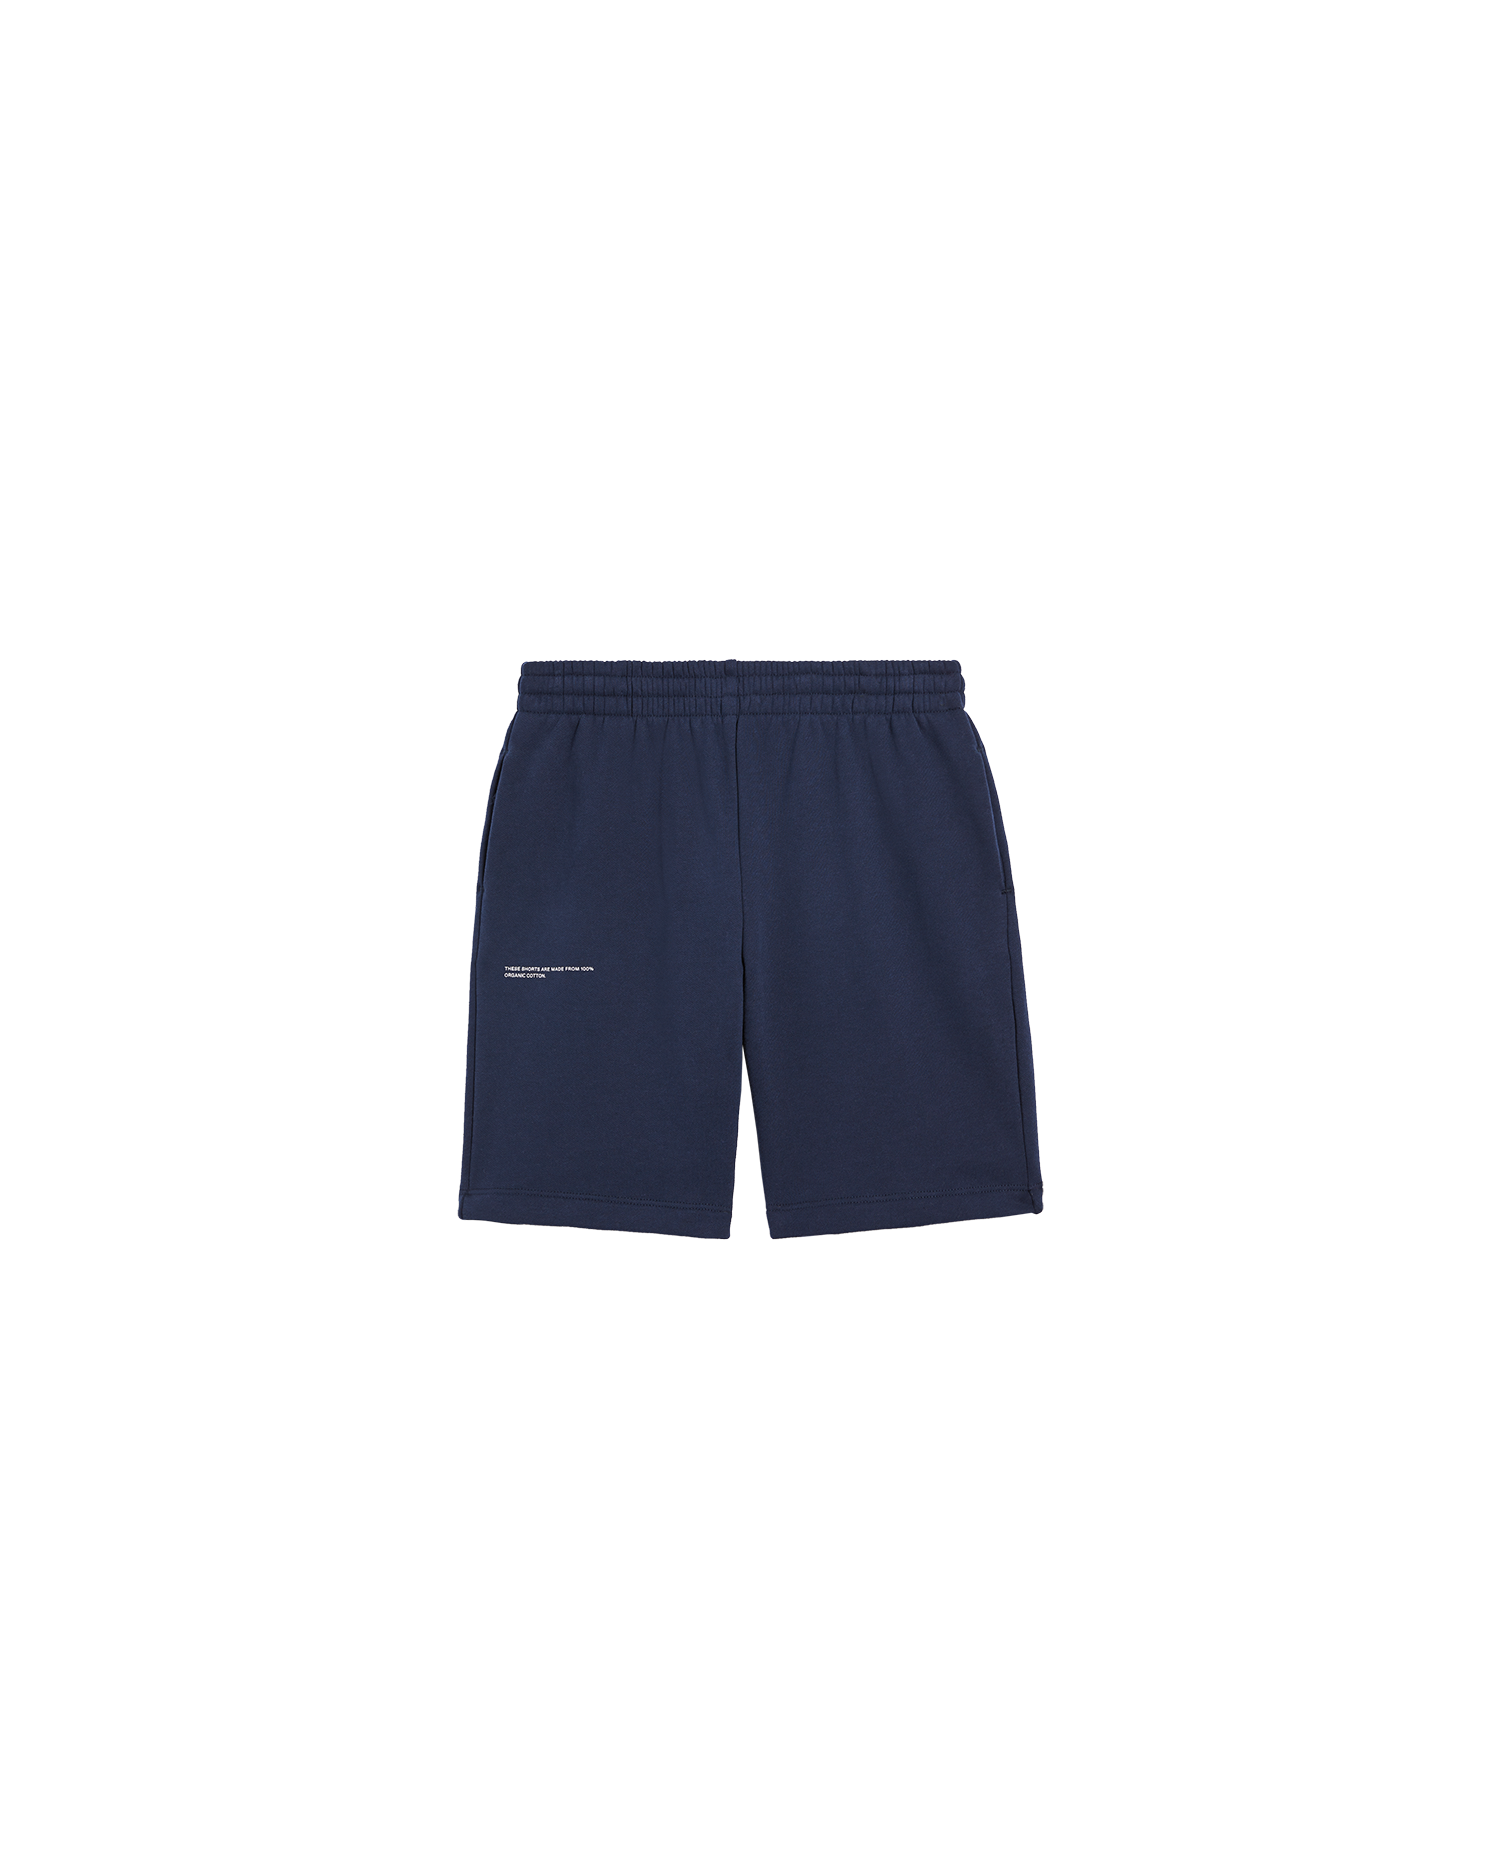 Kids 365 Long Shorts AW22—navy blue-packshot-3